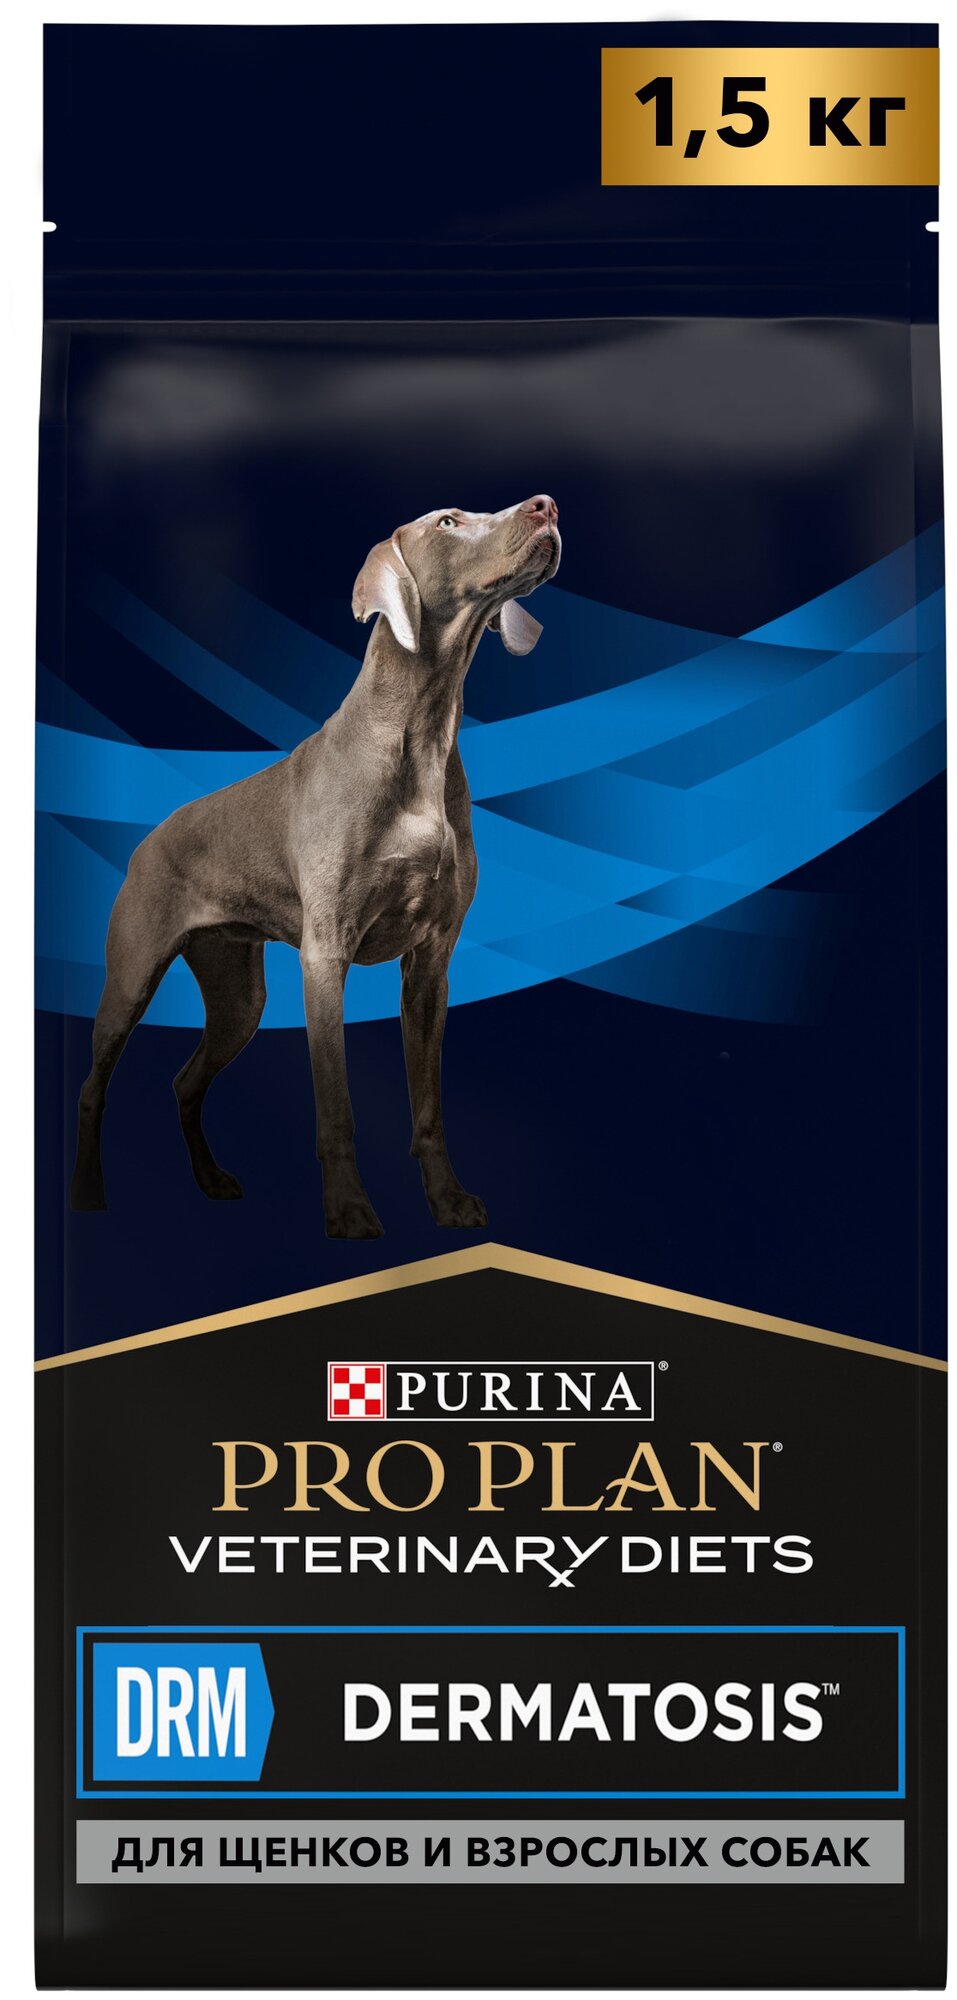 Сухой корм Purina Pro Plan Veterinary Diets DRM DERMATOSIS для щенков и взрослых собак при дерматозах 1,5кг